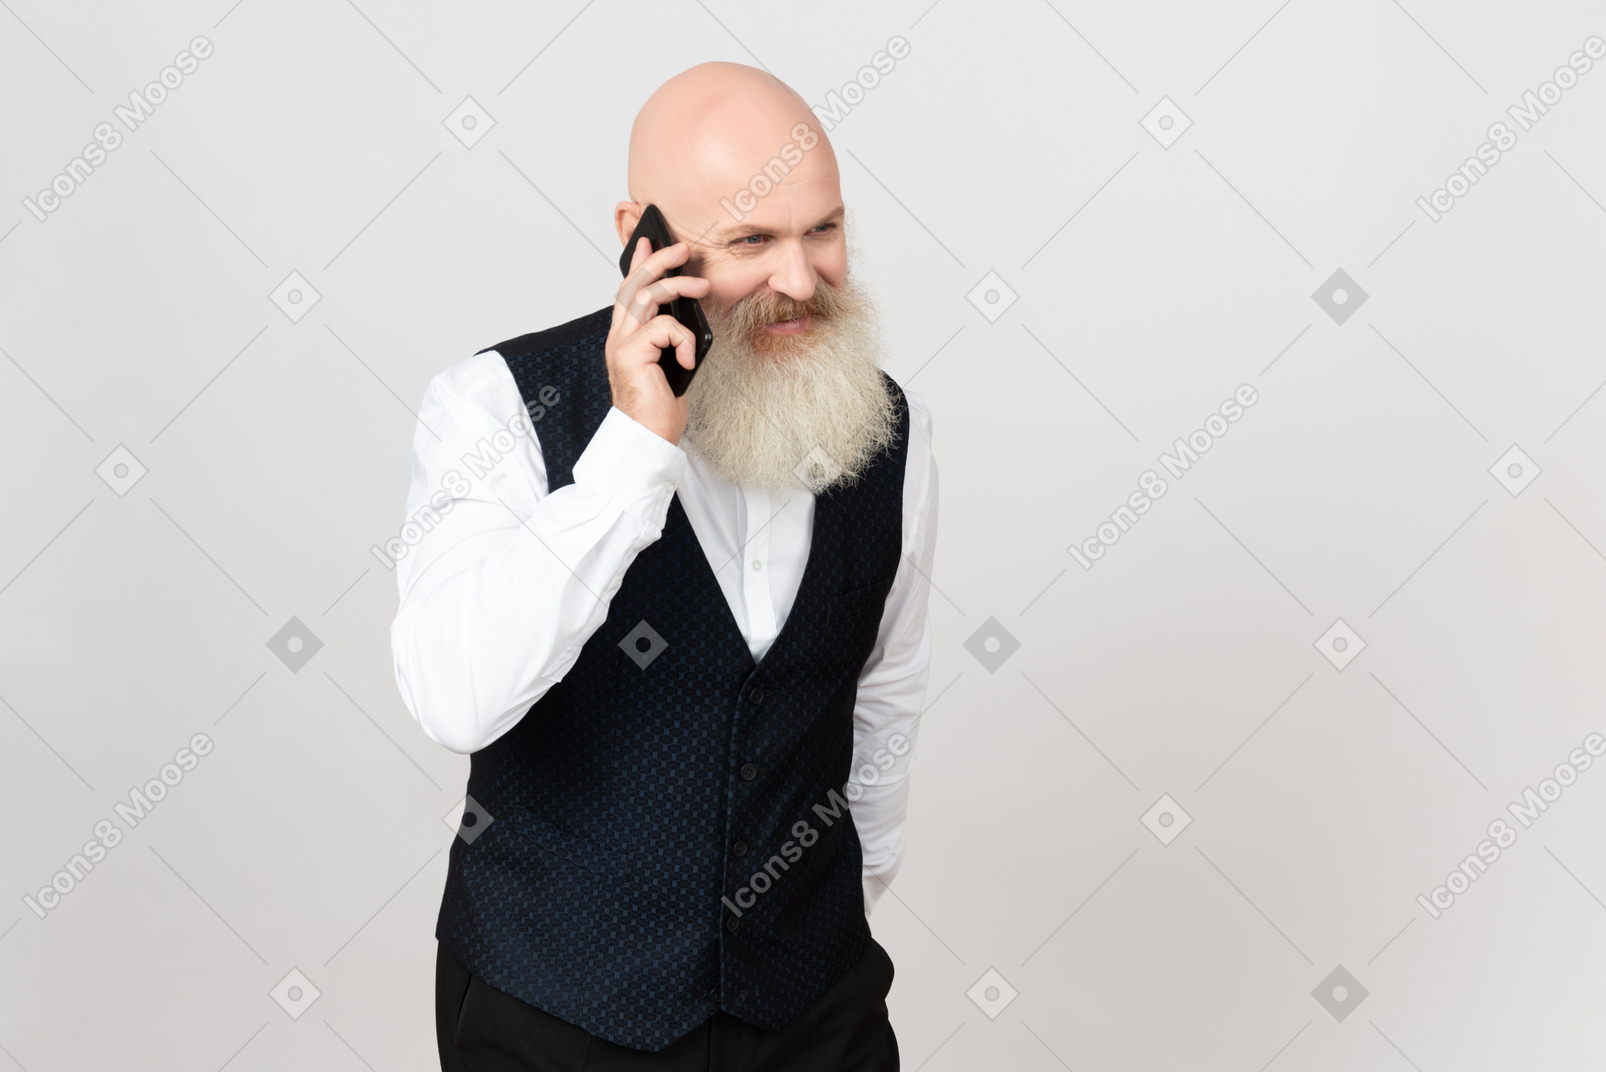 Hombre de edad sonriendo y hablando por teléfono